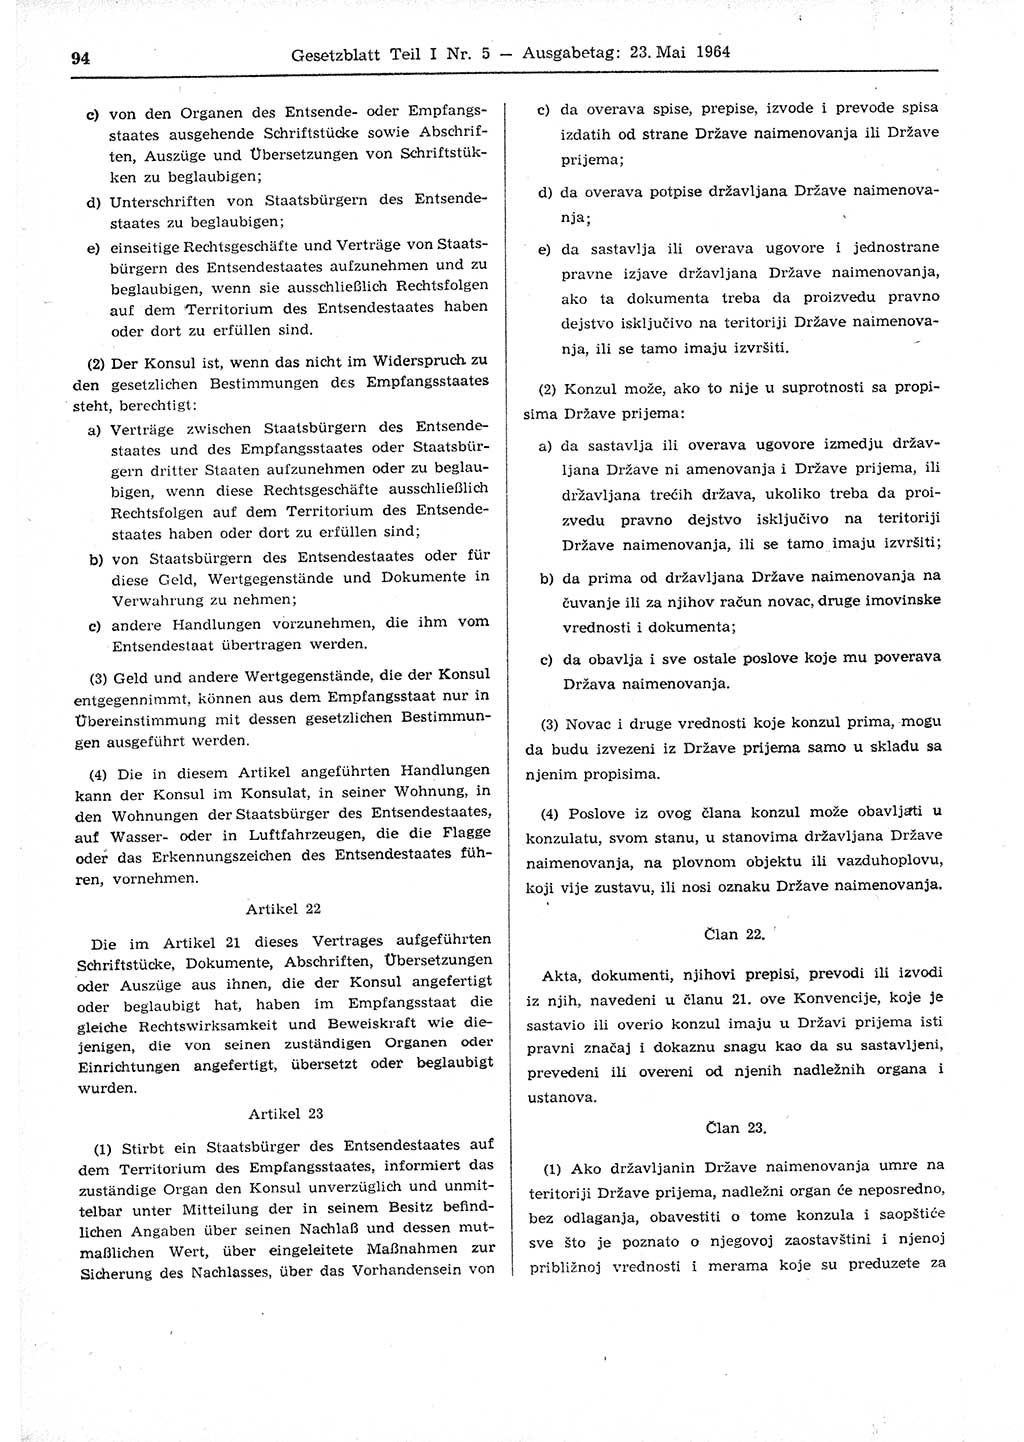 Gesetzblatt (GBl.) der Deutschen Demokratischen Republik (DDR) Teil Ⅰ 1964, Seite 94 (GBl. DDR Ⅰ 1964, S. 94)